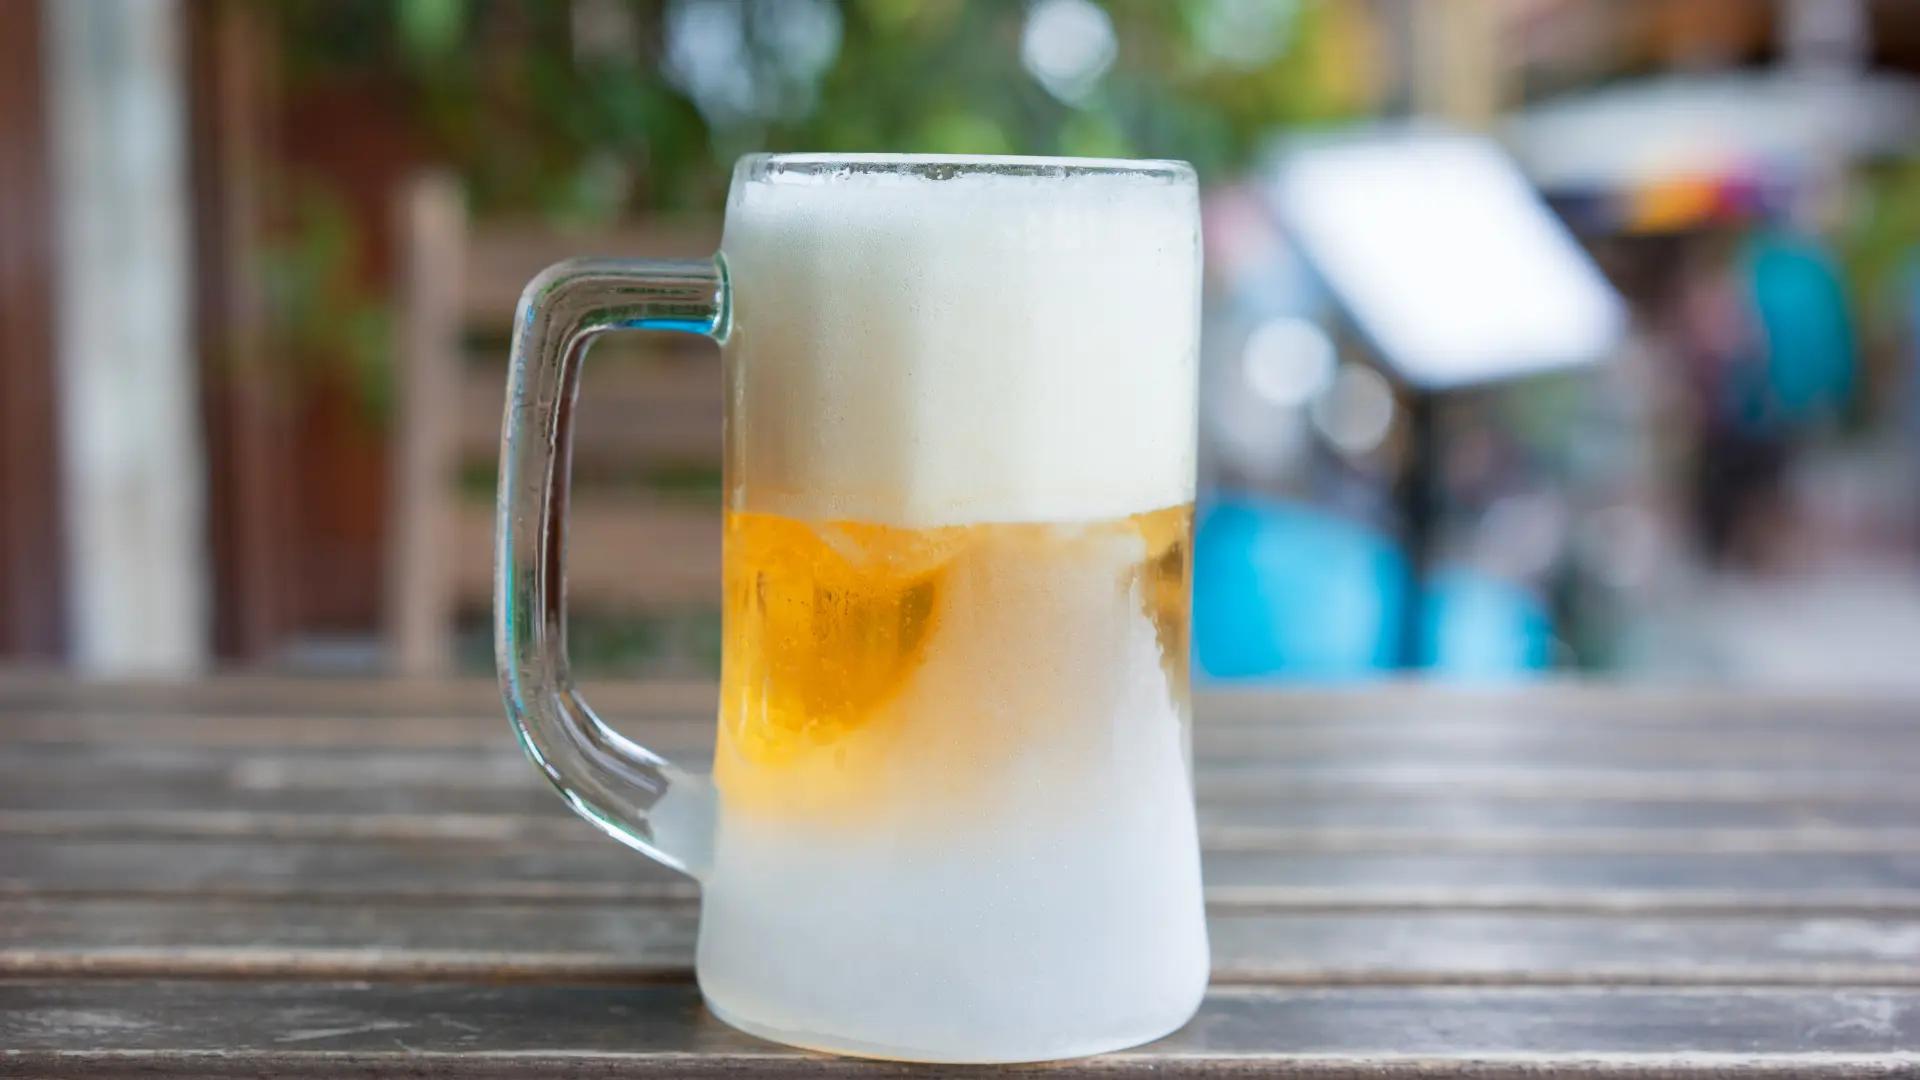 envase de cerveza inteligente te avisa cuando esta frio - Cómo funciona chill it